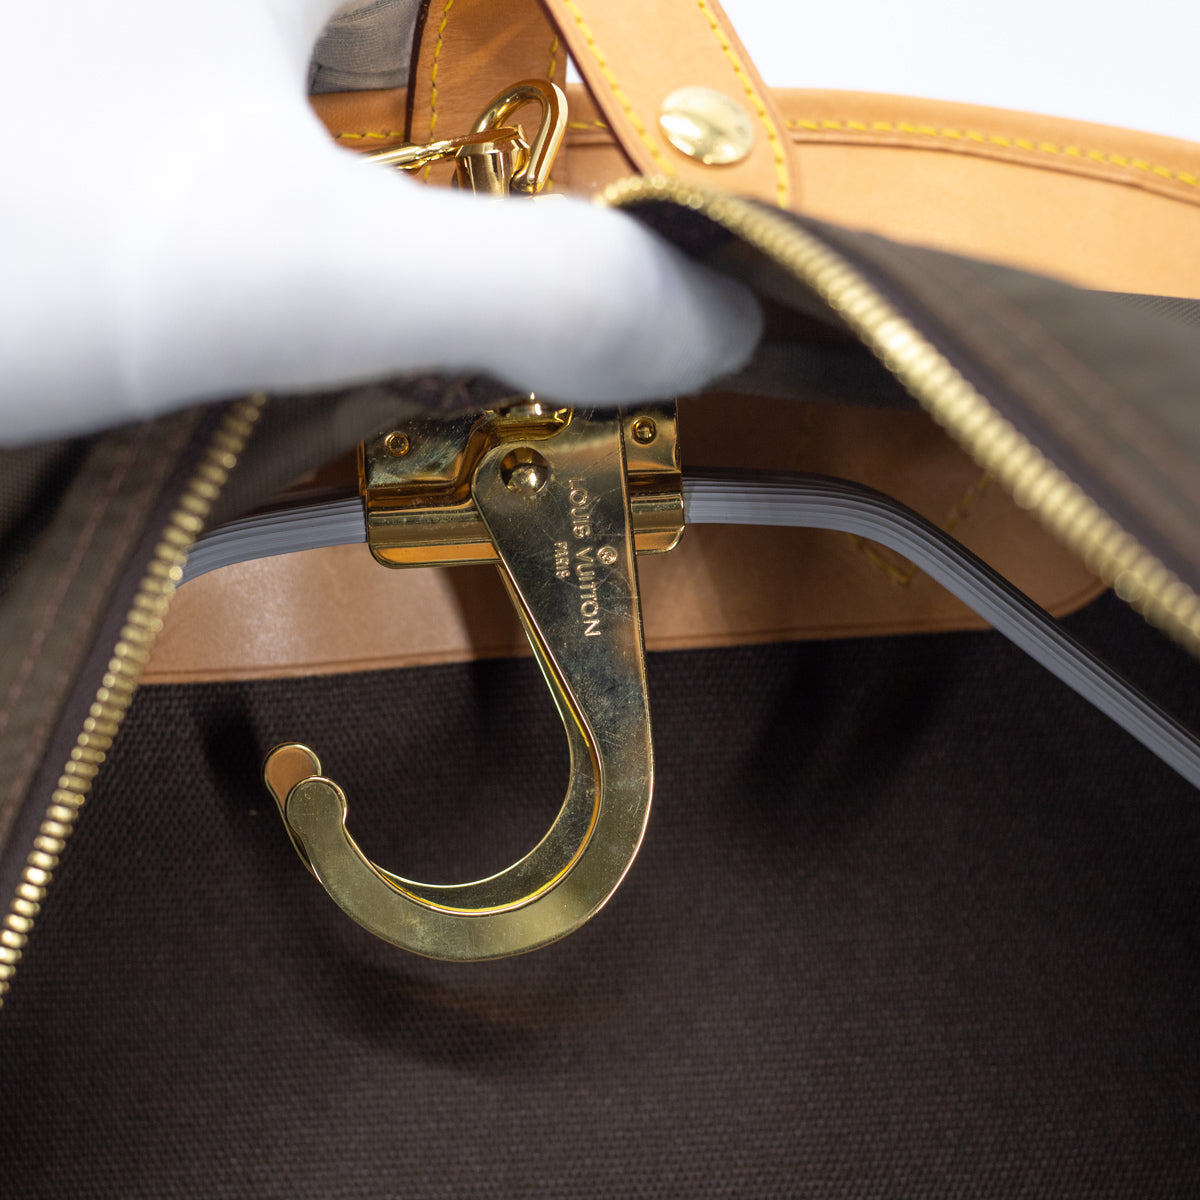 Louis Vuitton Garment Hanger Monogram - THE PURSE AFFAIR